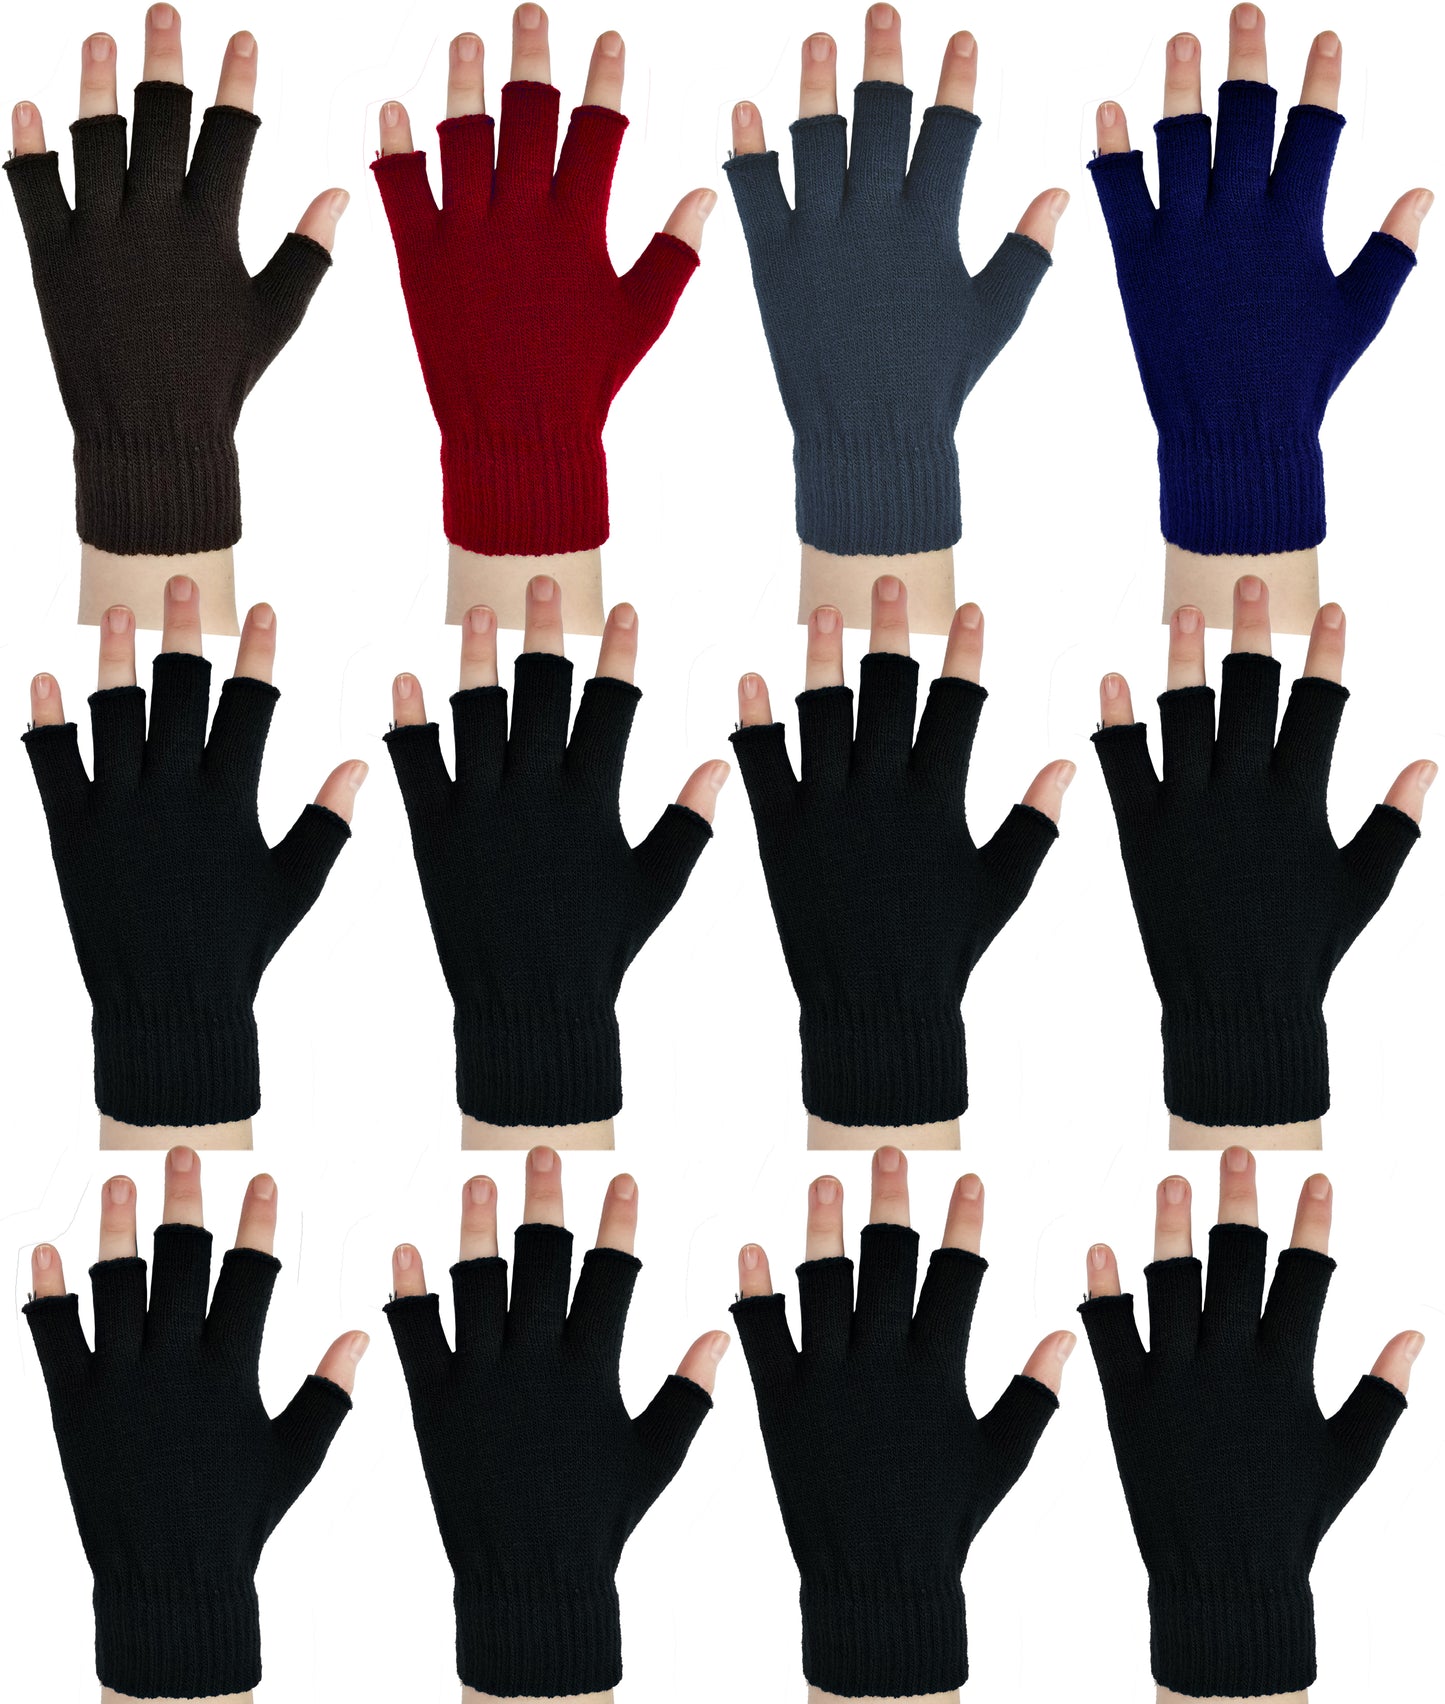 Fingerless Magic Gloves for Men and Women